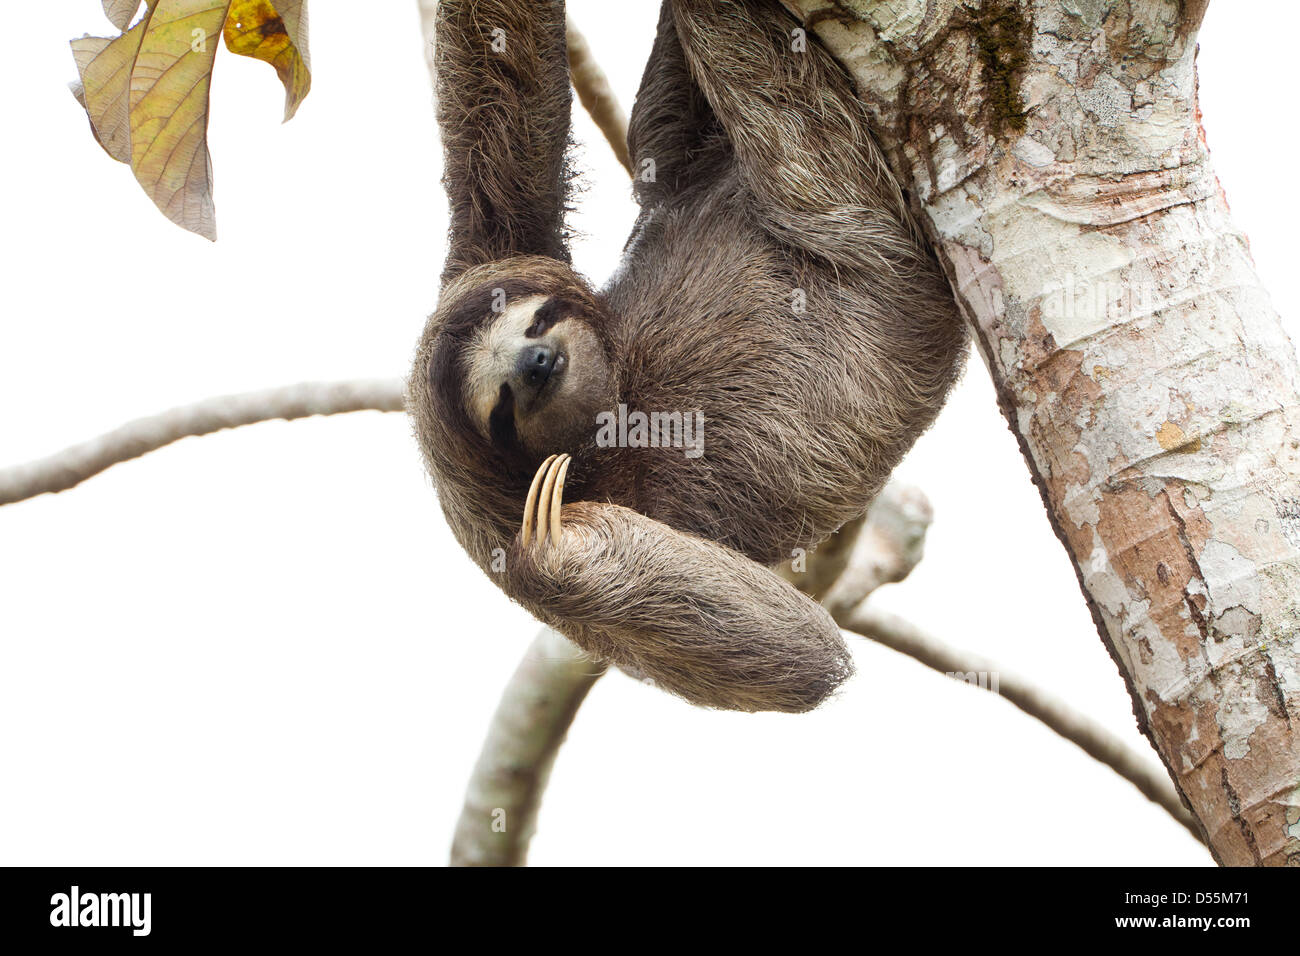 Panama faune avec un Sloth à trois doigts, Bradypus variegatus, dans un arbre de Cecropia à côté de Rio Chagres, parc national de Soberania, République du Panama. Banque D'Images